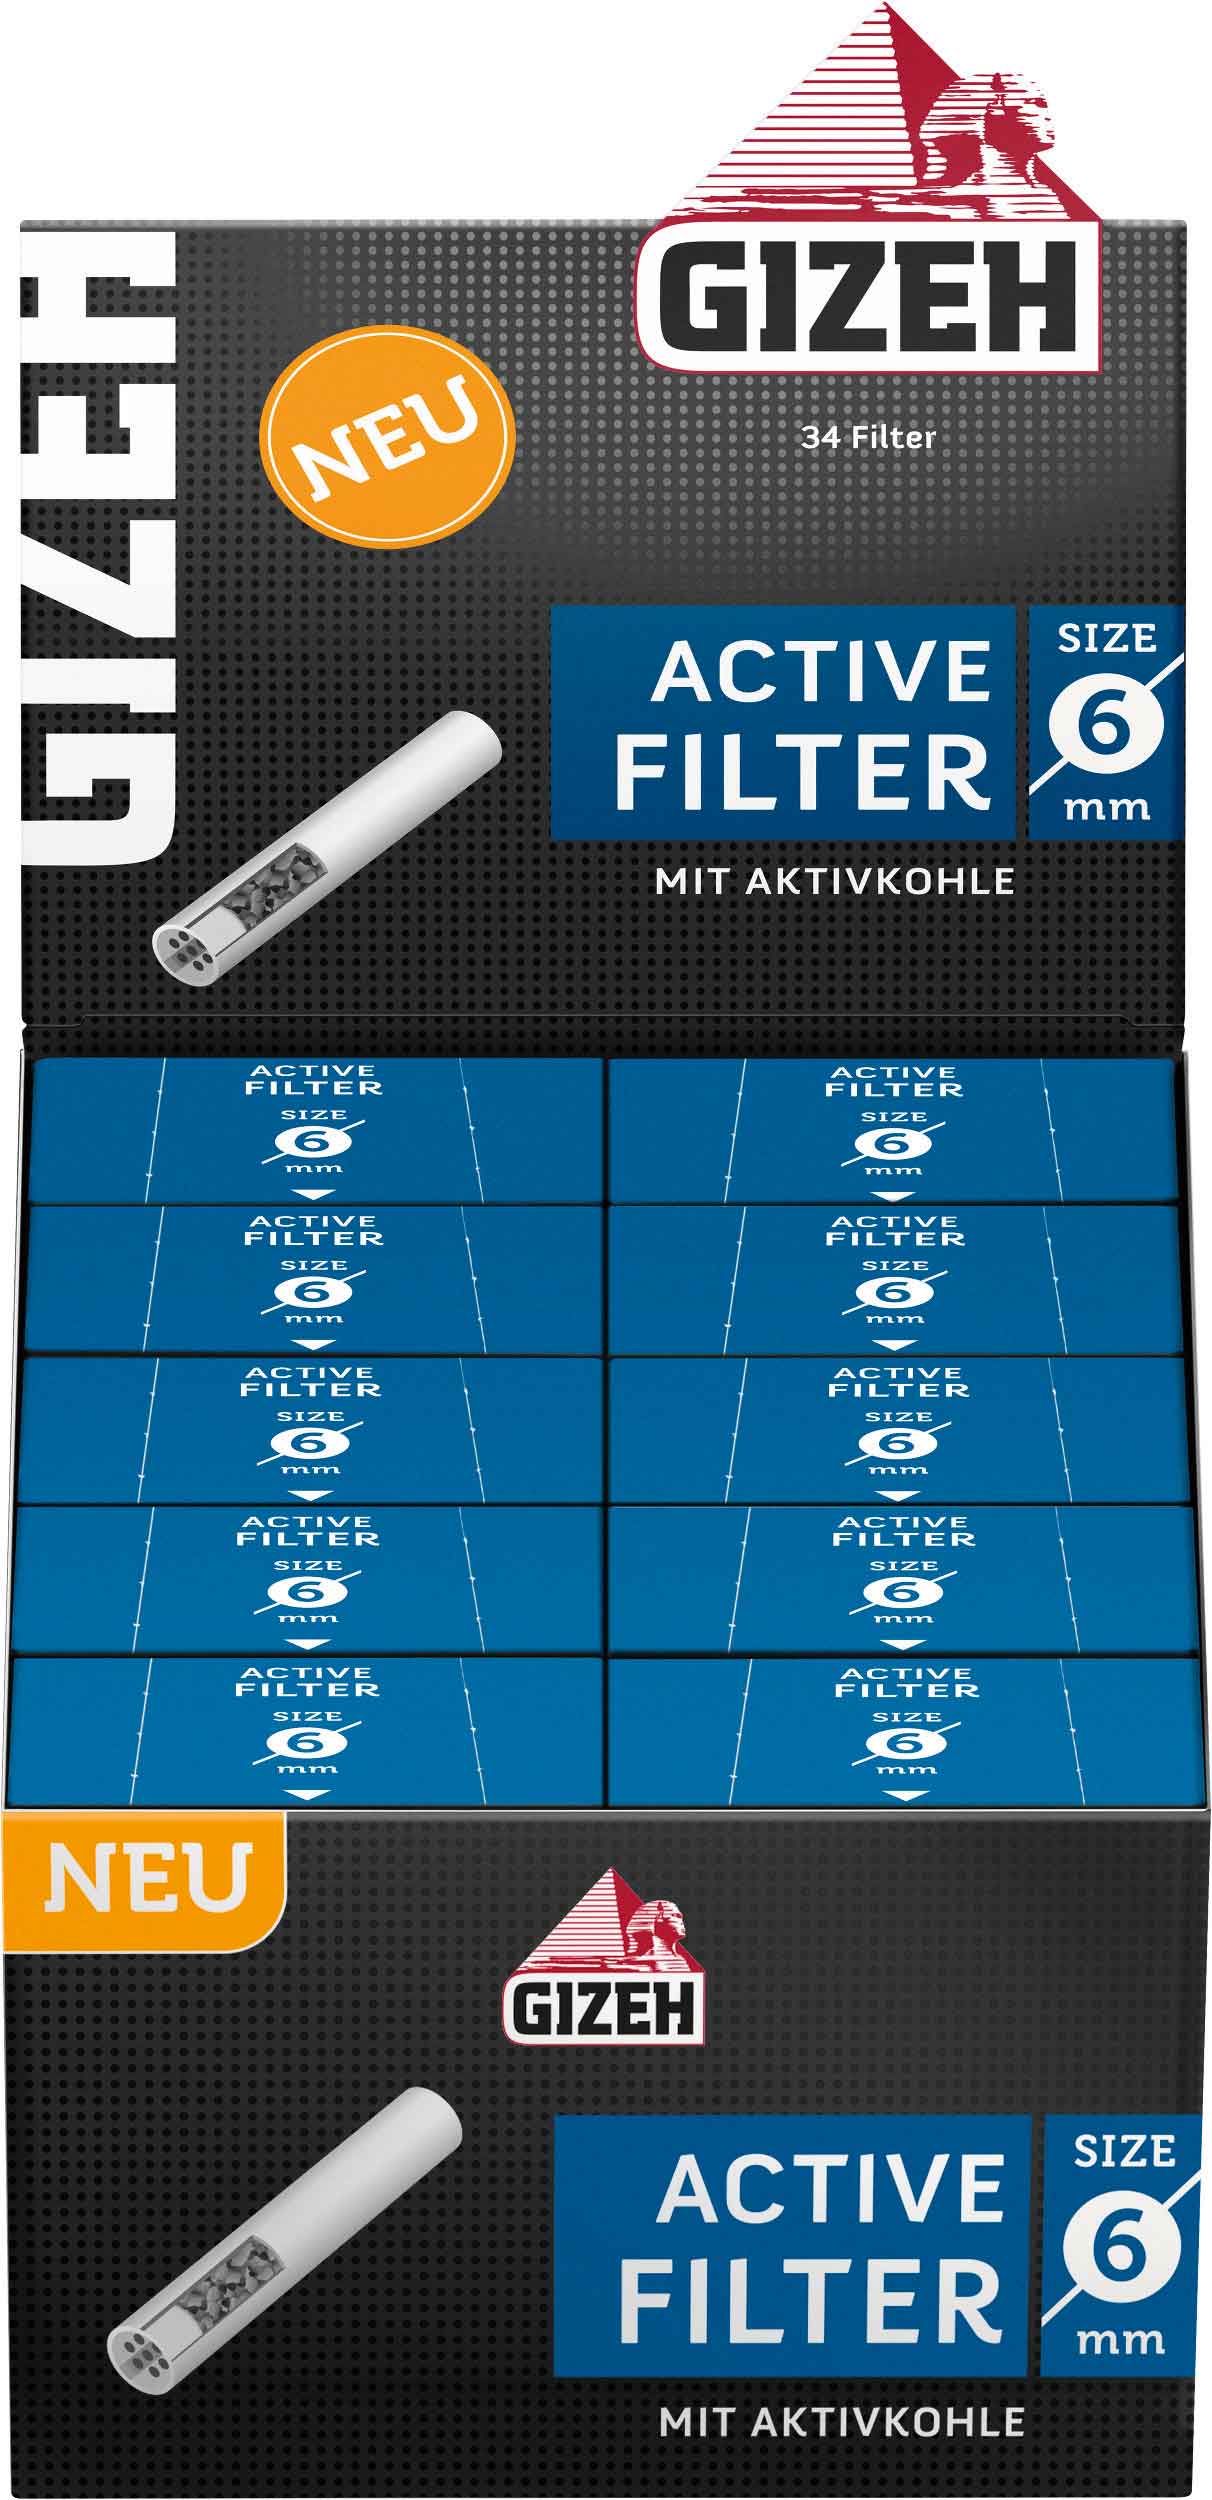 Aktivkohlefilter mit 8 mm Durchmesser 2 Boxen GIZEH Active Filter 400 Filter 